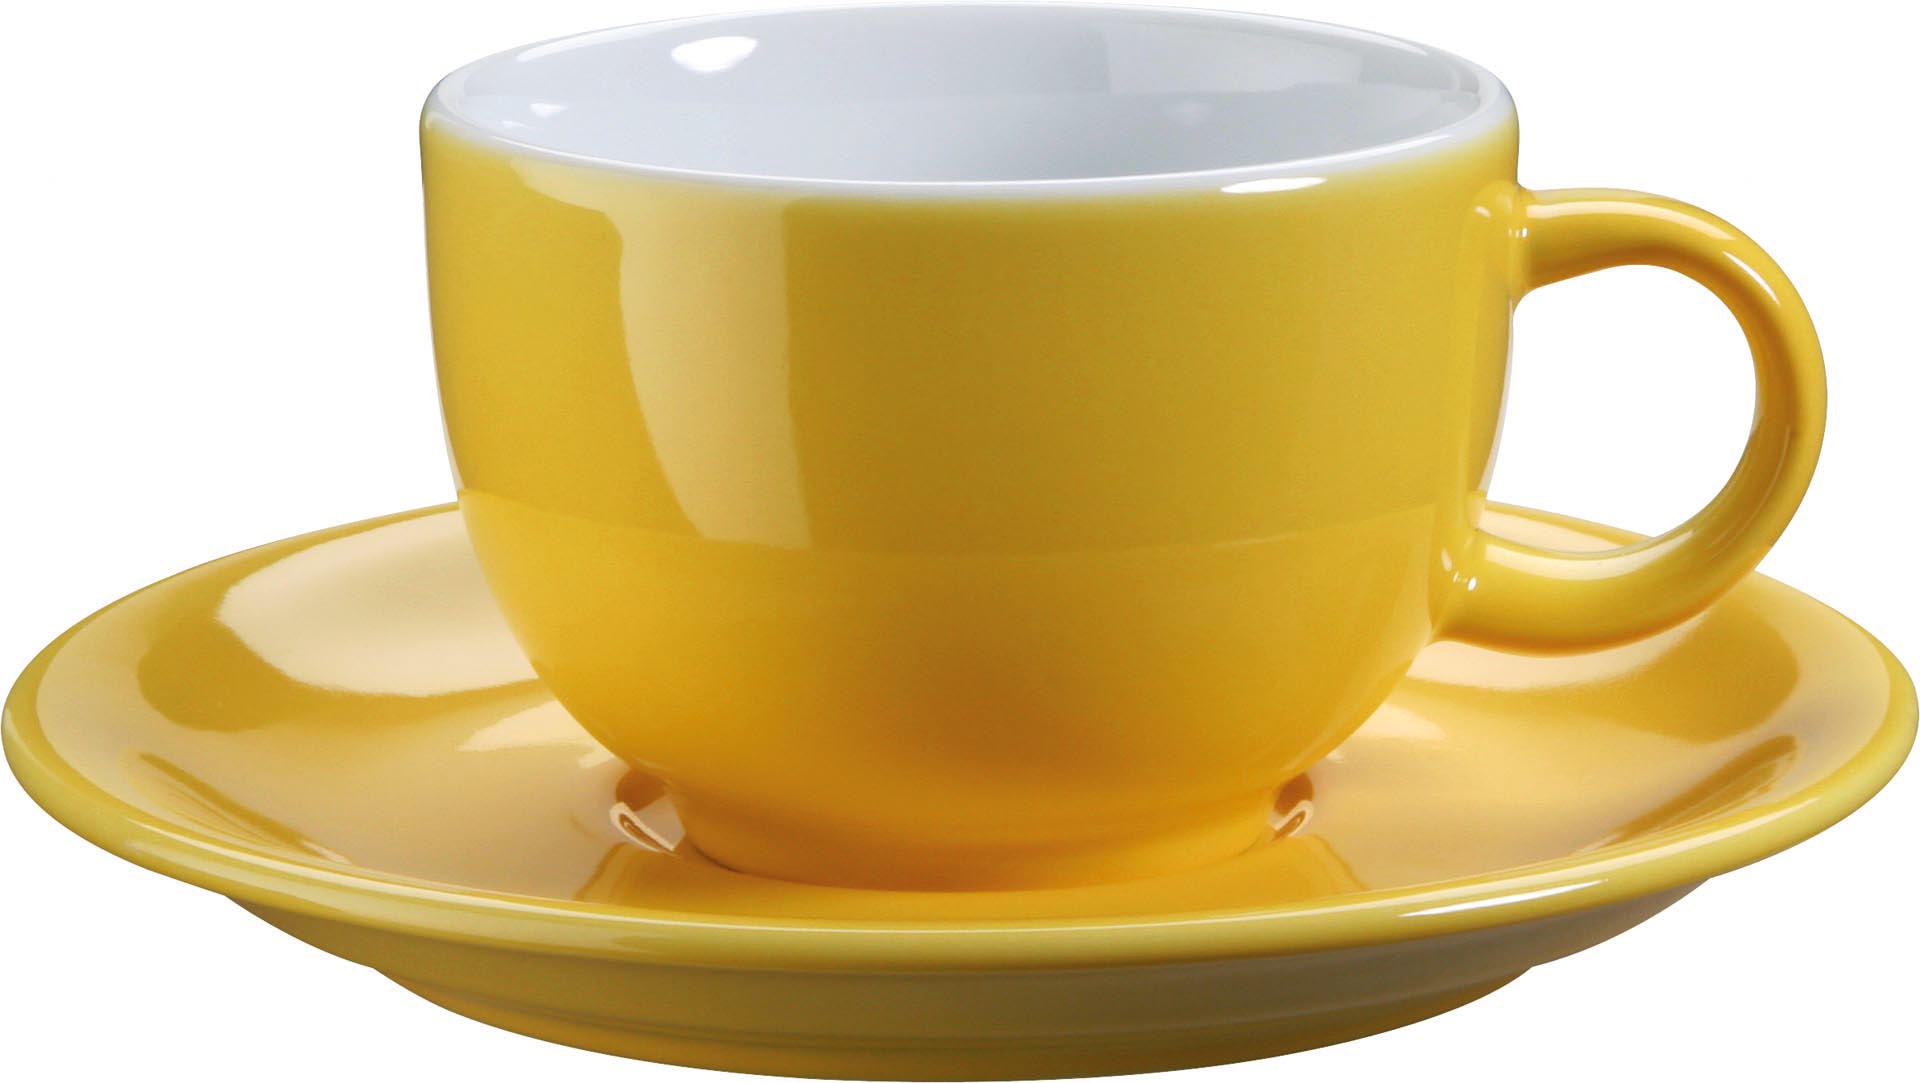 Kaffee- / Cappuccinotasse "Barista" gelb